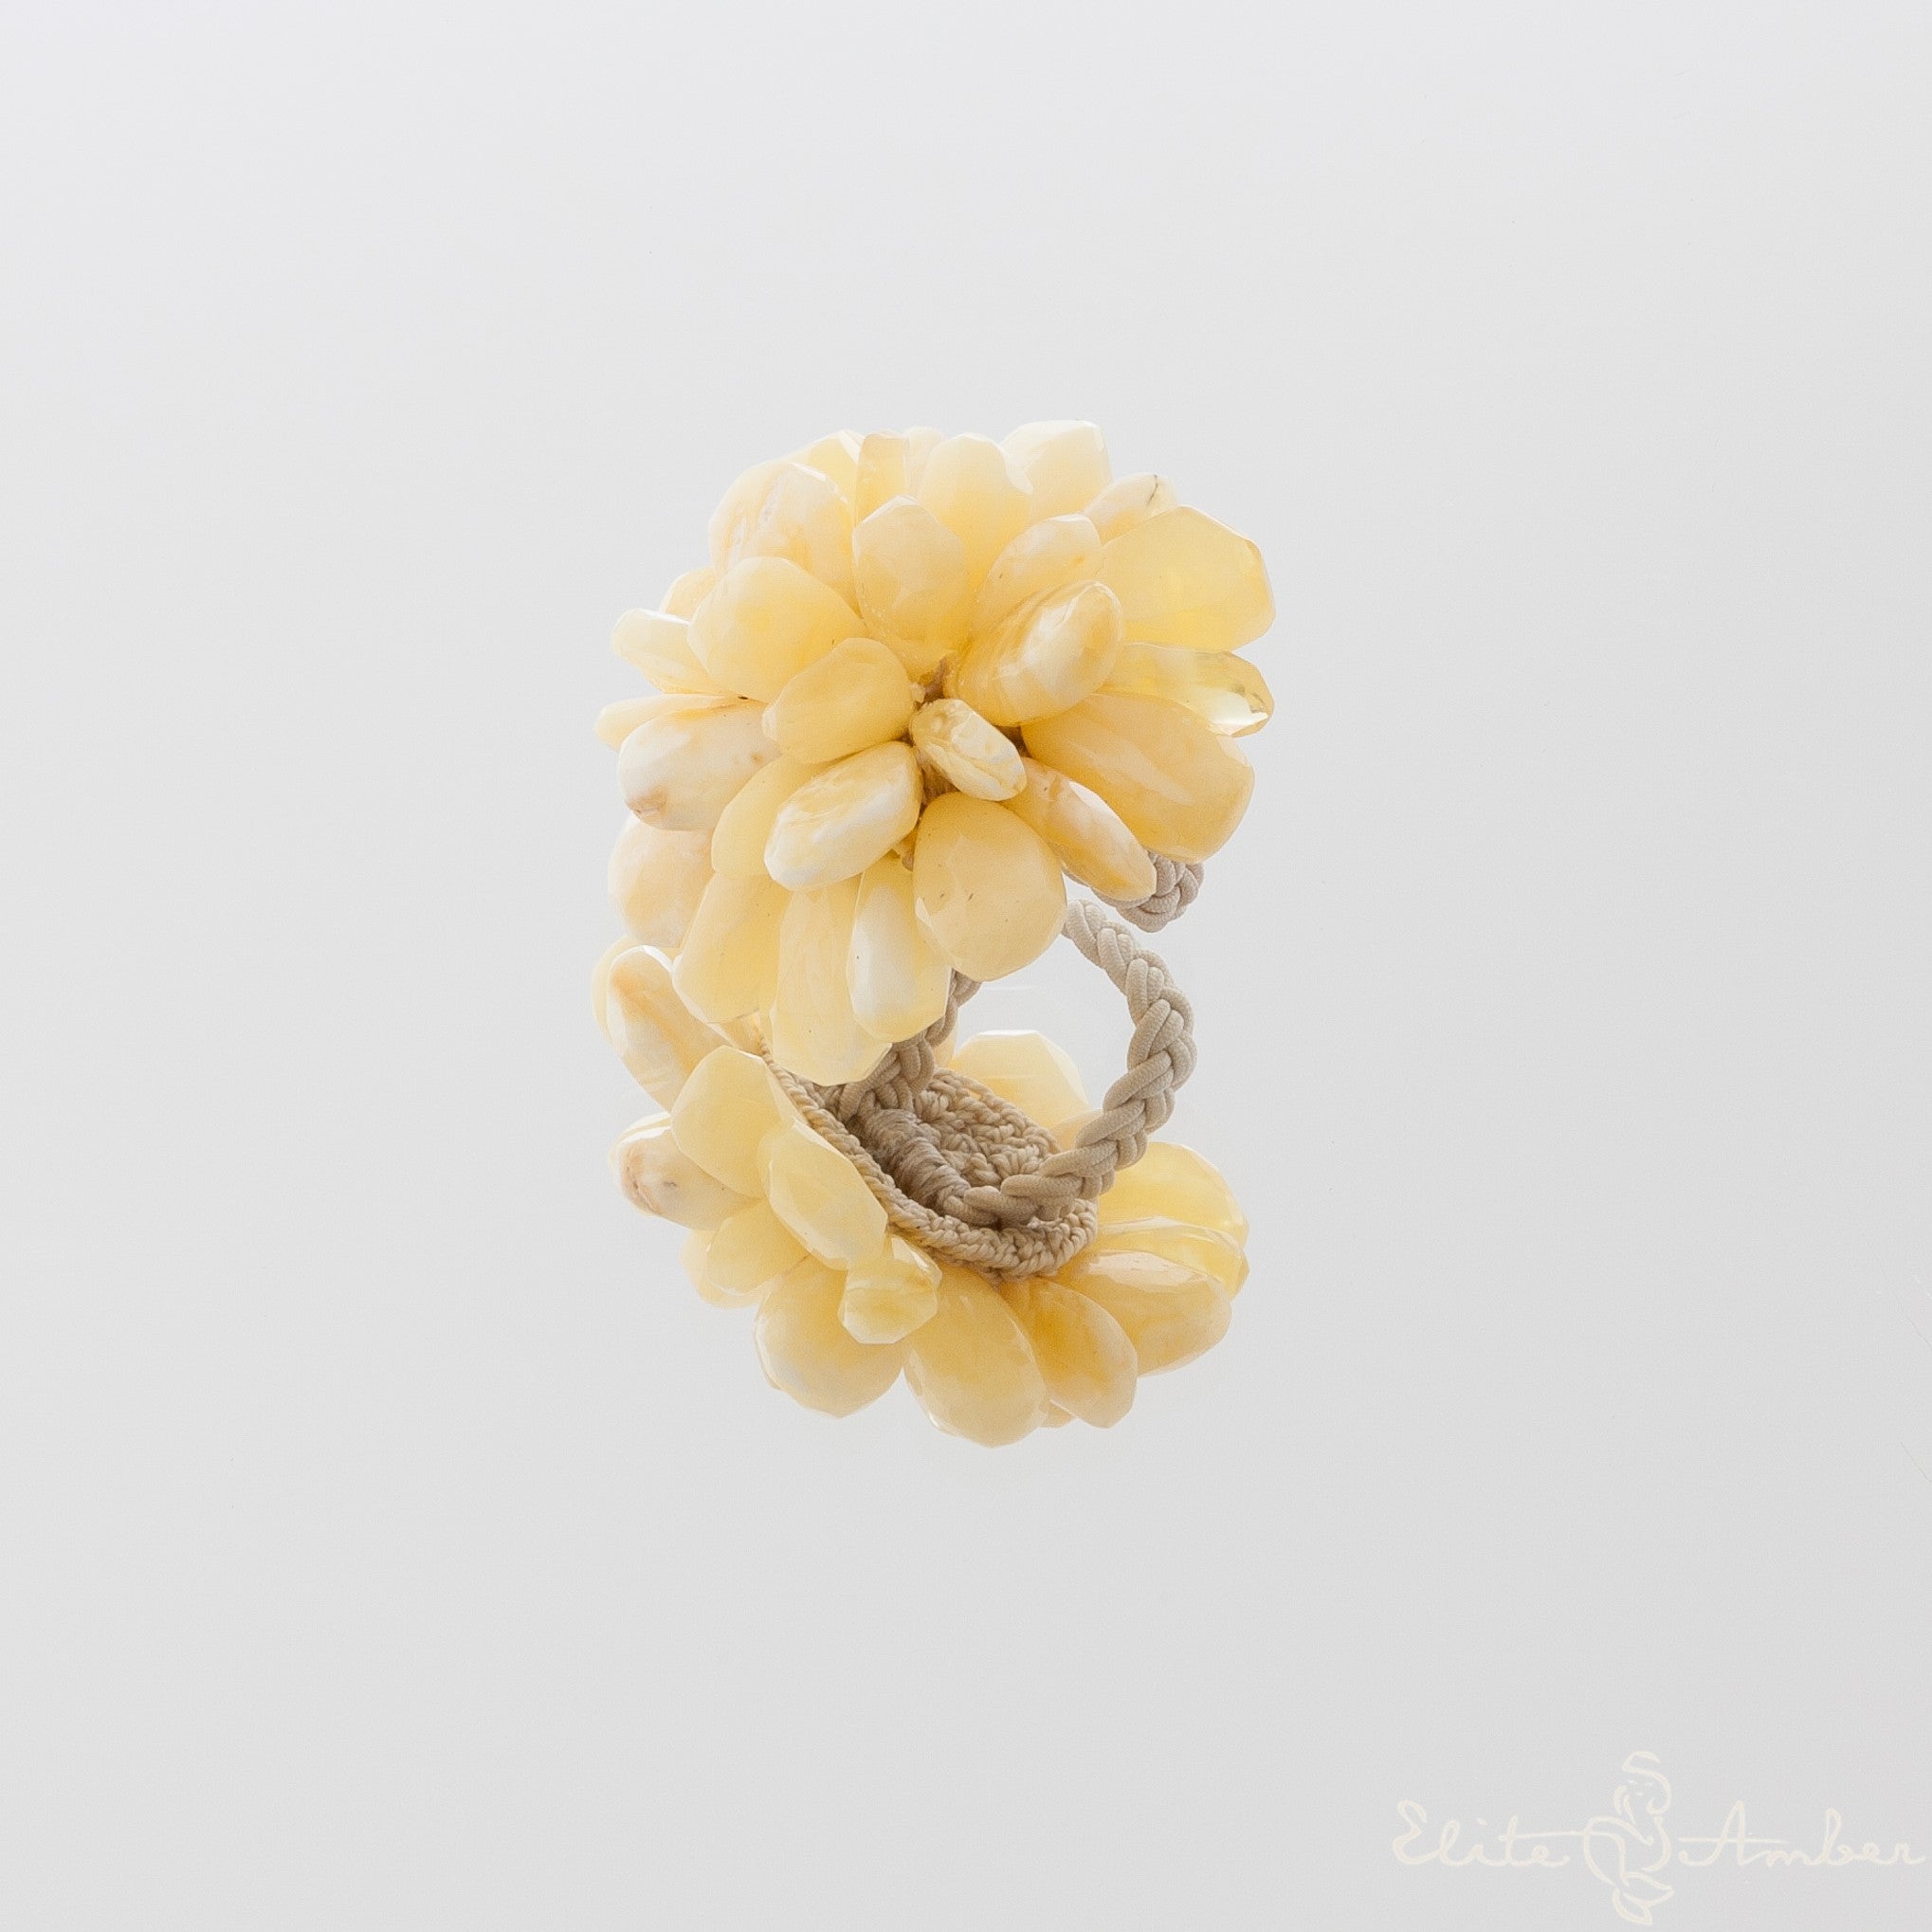 Amber ring "Royal white"